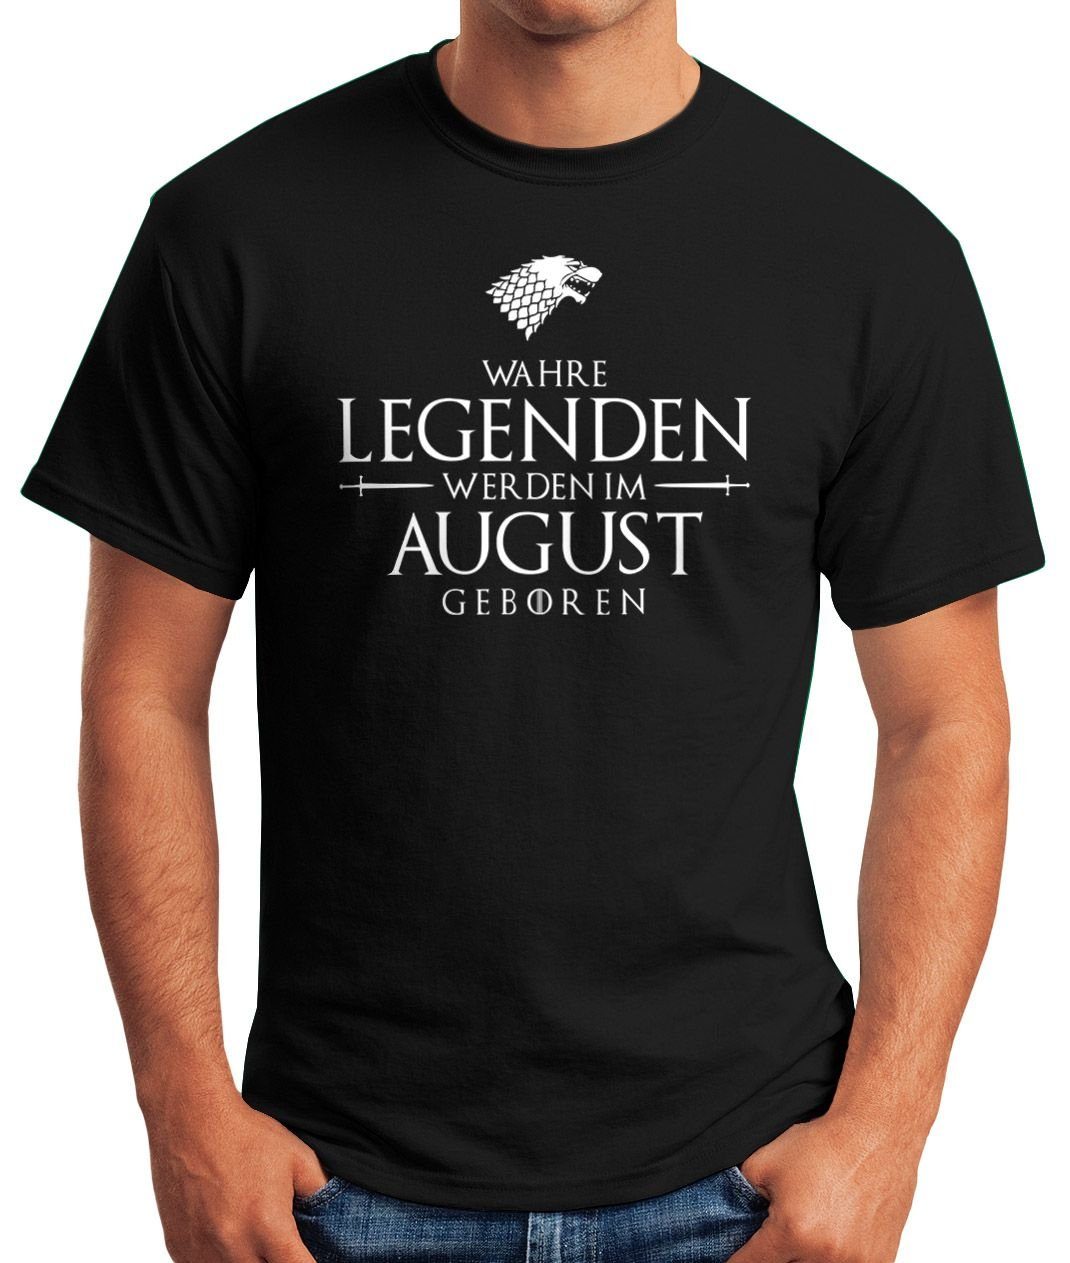 MoonWorks Print-Shirt Herren T-Shirt Wahre August geboren Object] Moonworks® im Legenden schwarz Print Fun-Shirt mit [object werden